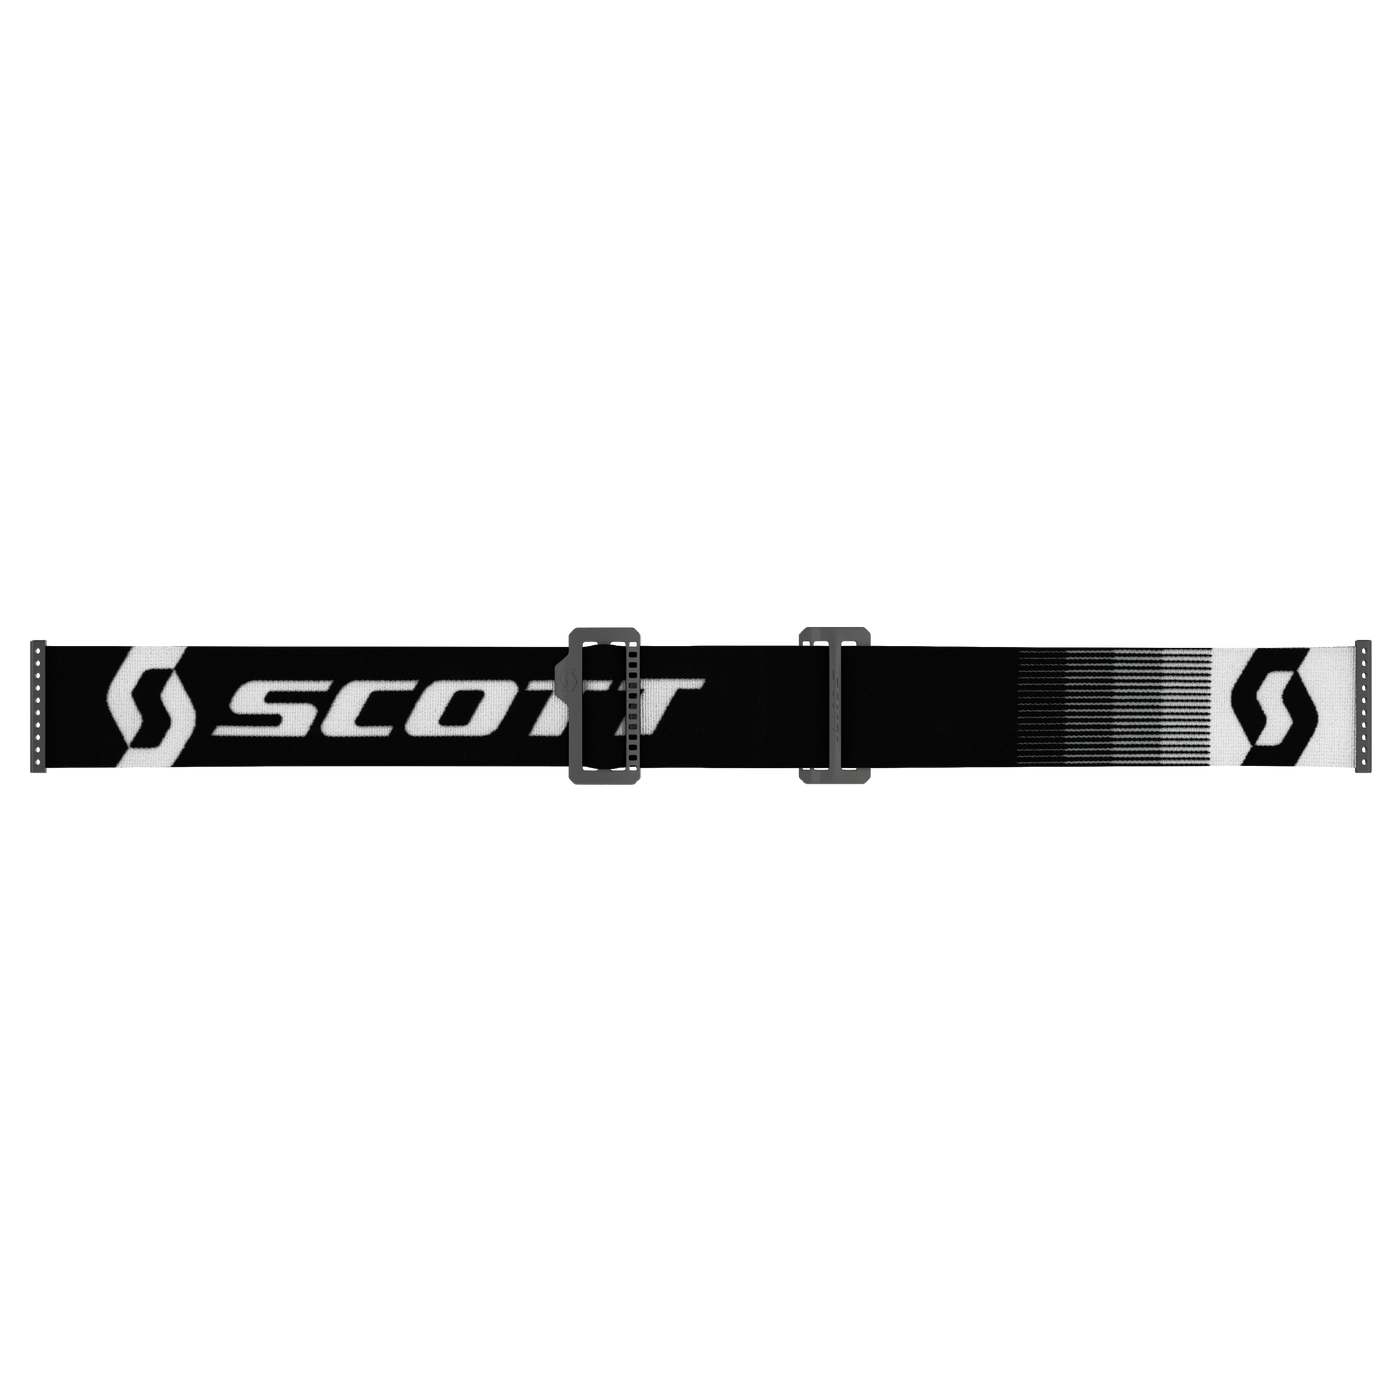 SCOTT Prospect Goggle, Premium Black / White - Purple Chrome